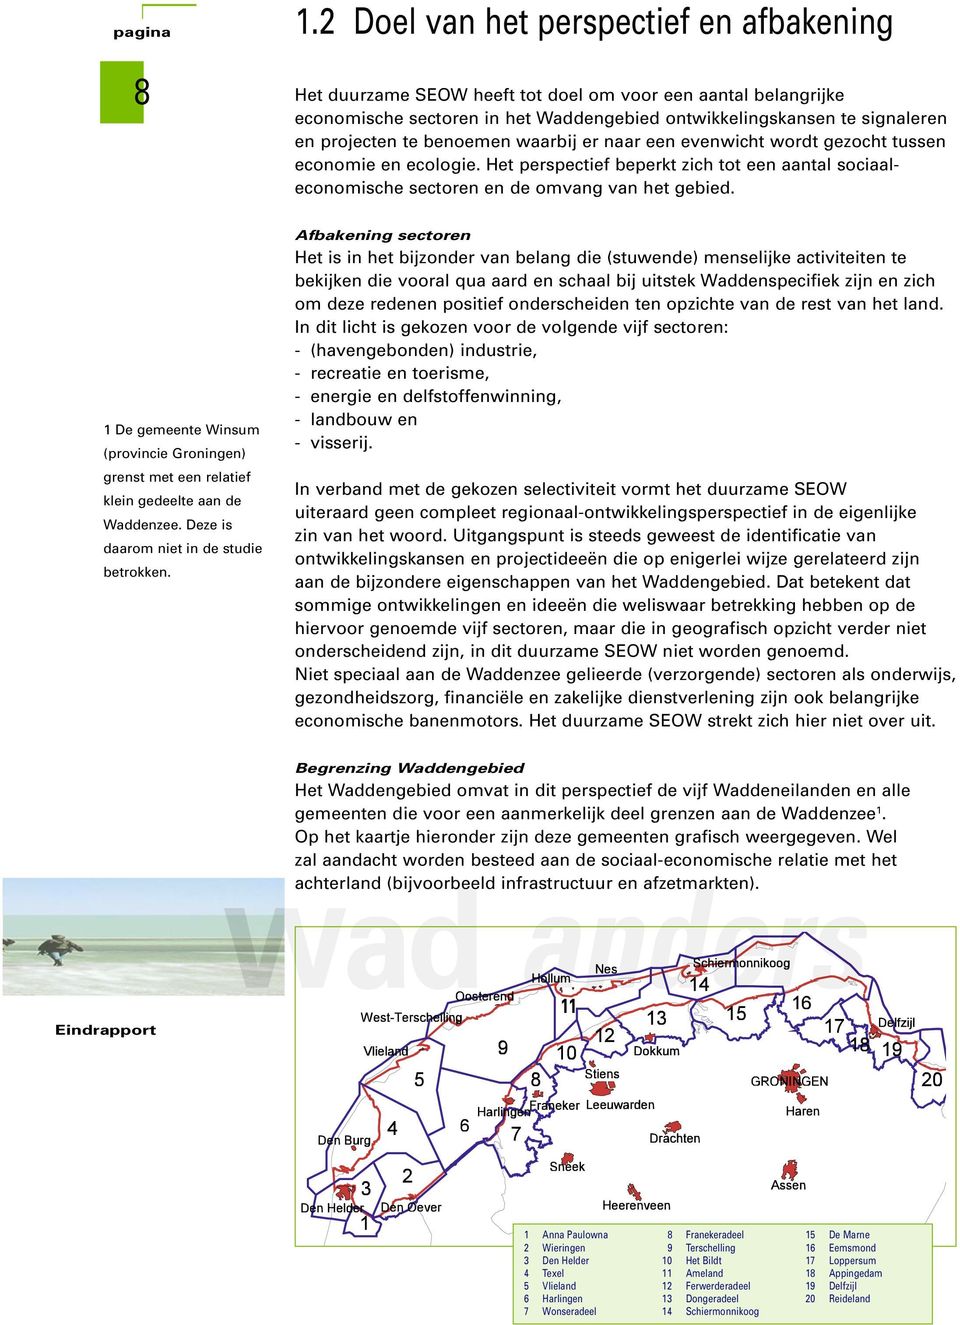 1 De gemeente Winsum (provincie Groningen) grenst met een relatief klein gedeelte aan de Waddenzee. Deze is daarom niet in de studie betrokken.